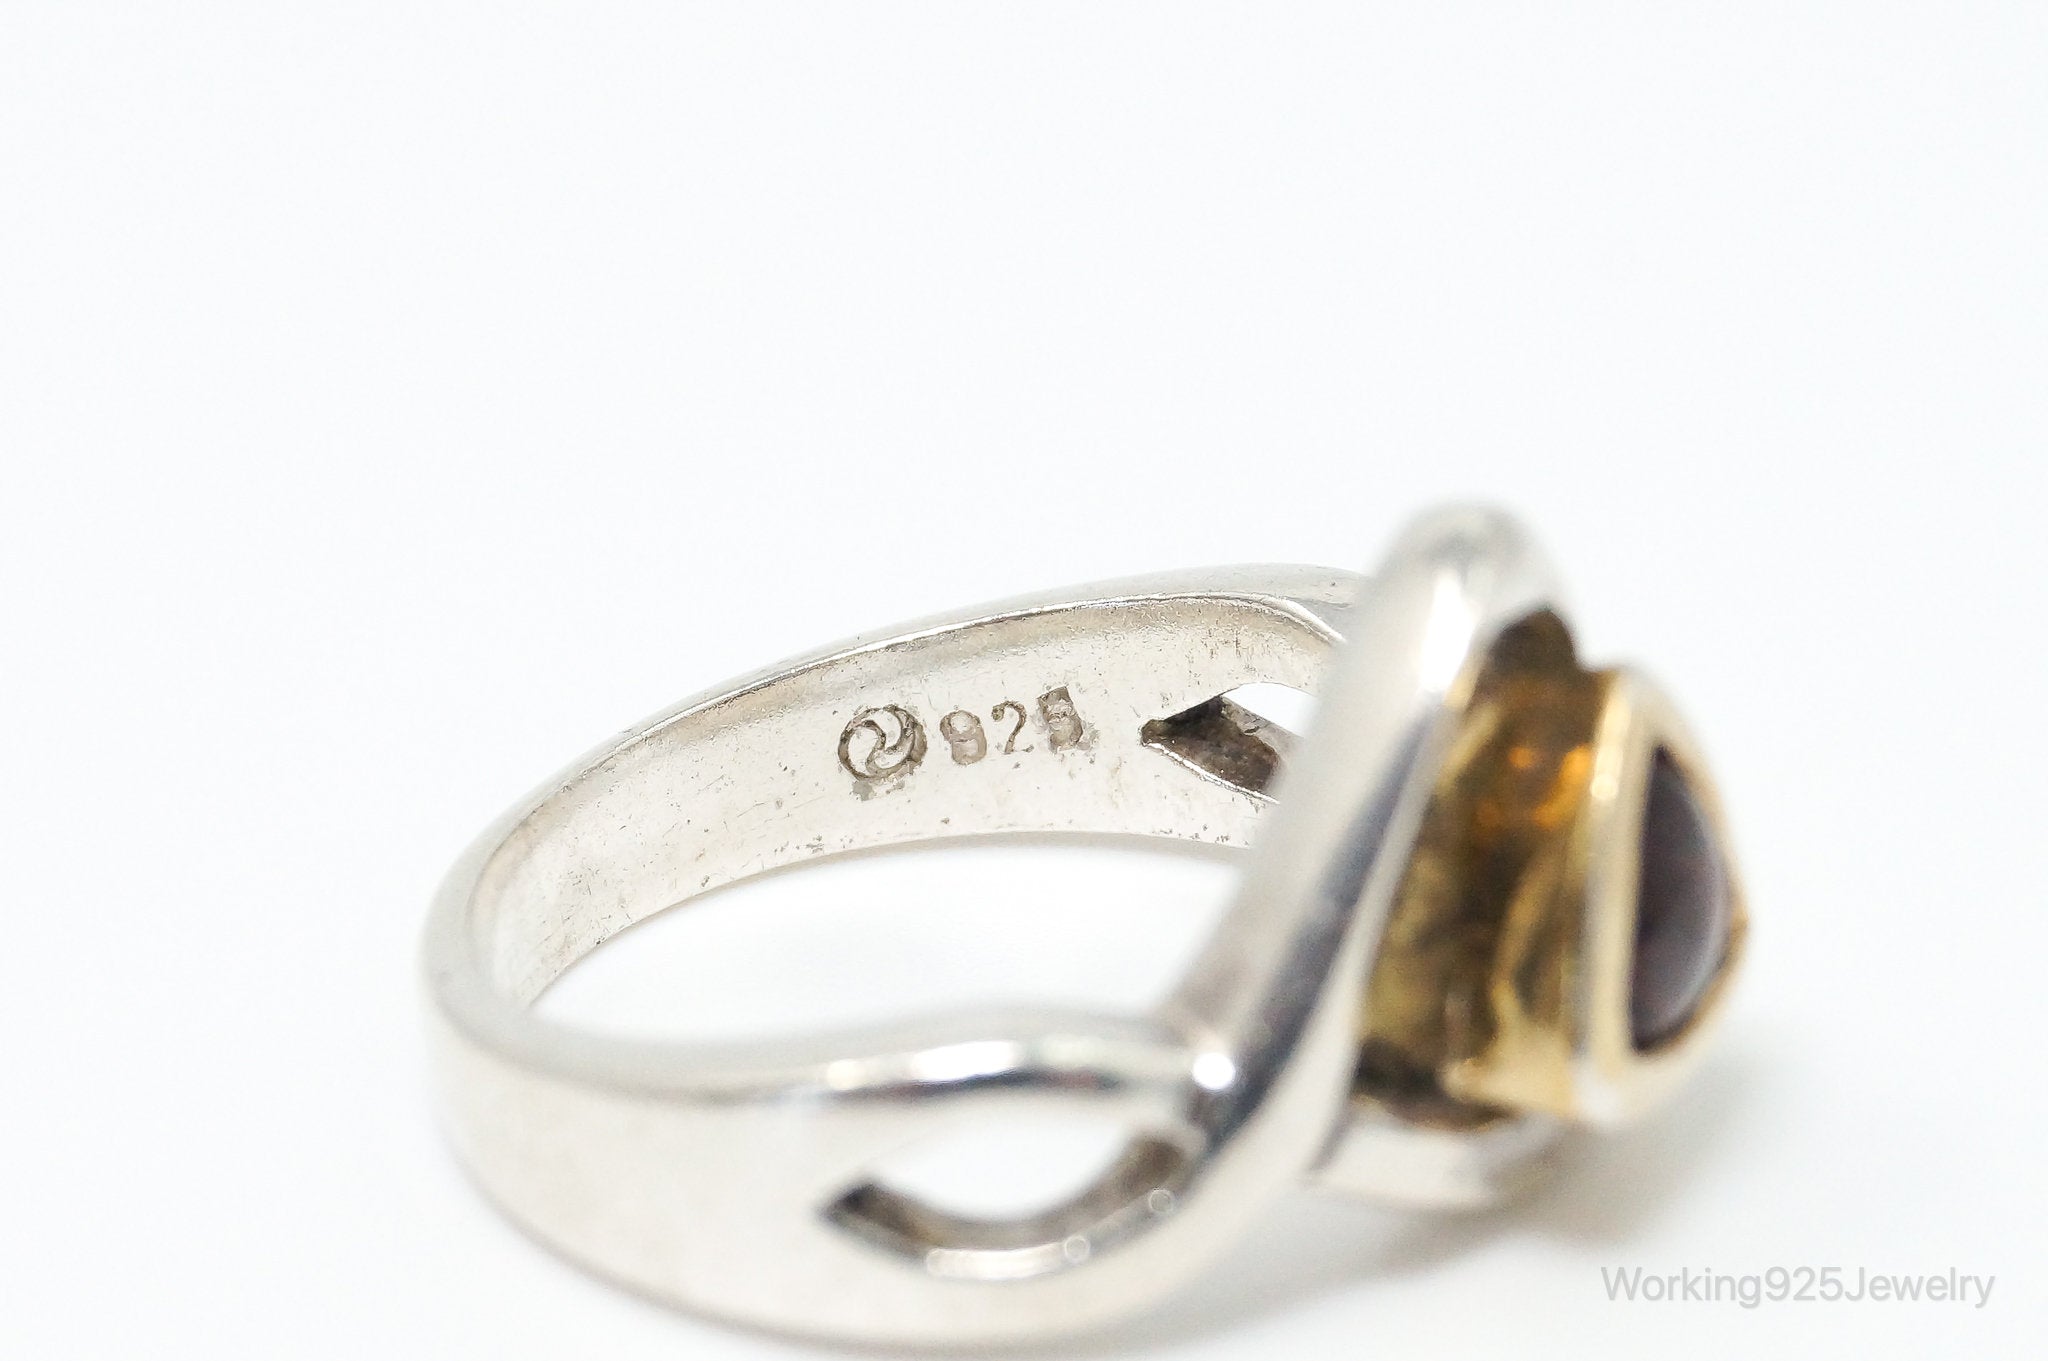 Vintage Art Deco Garnet Gold Vermeil Sterling Silver Ring - Size 5.75